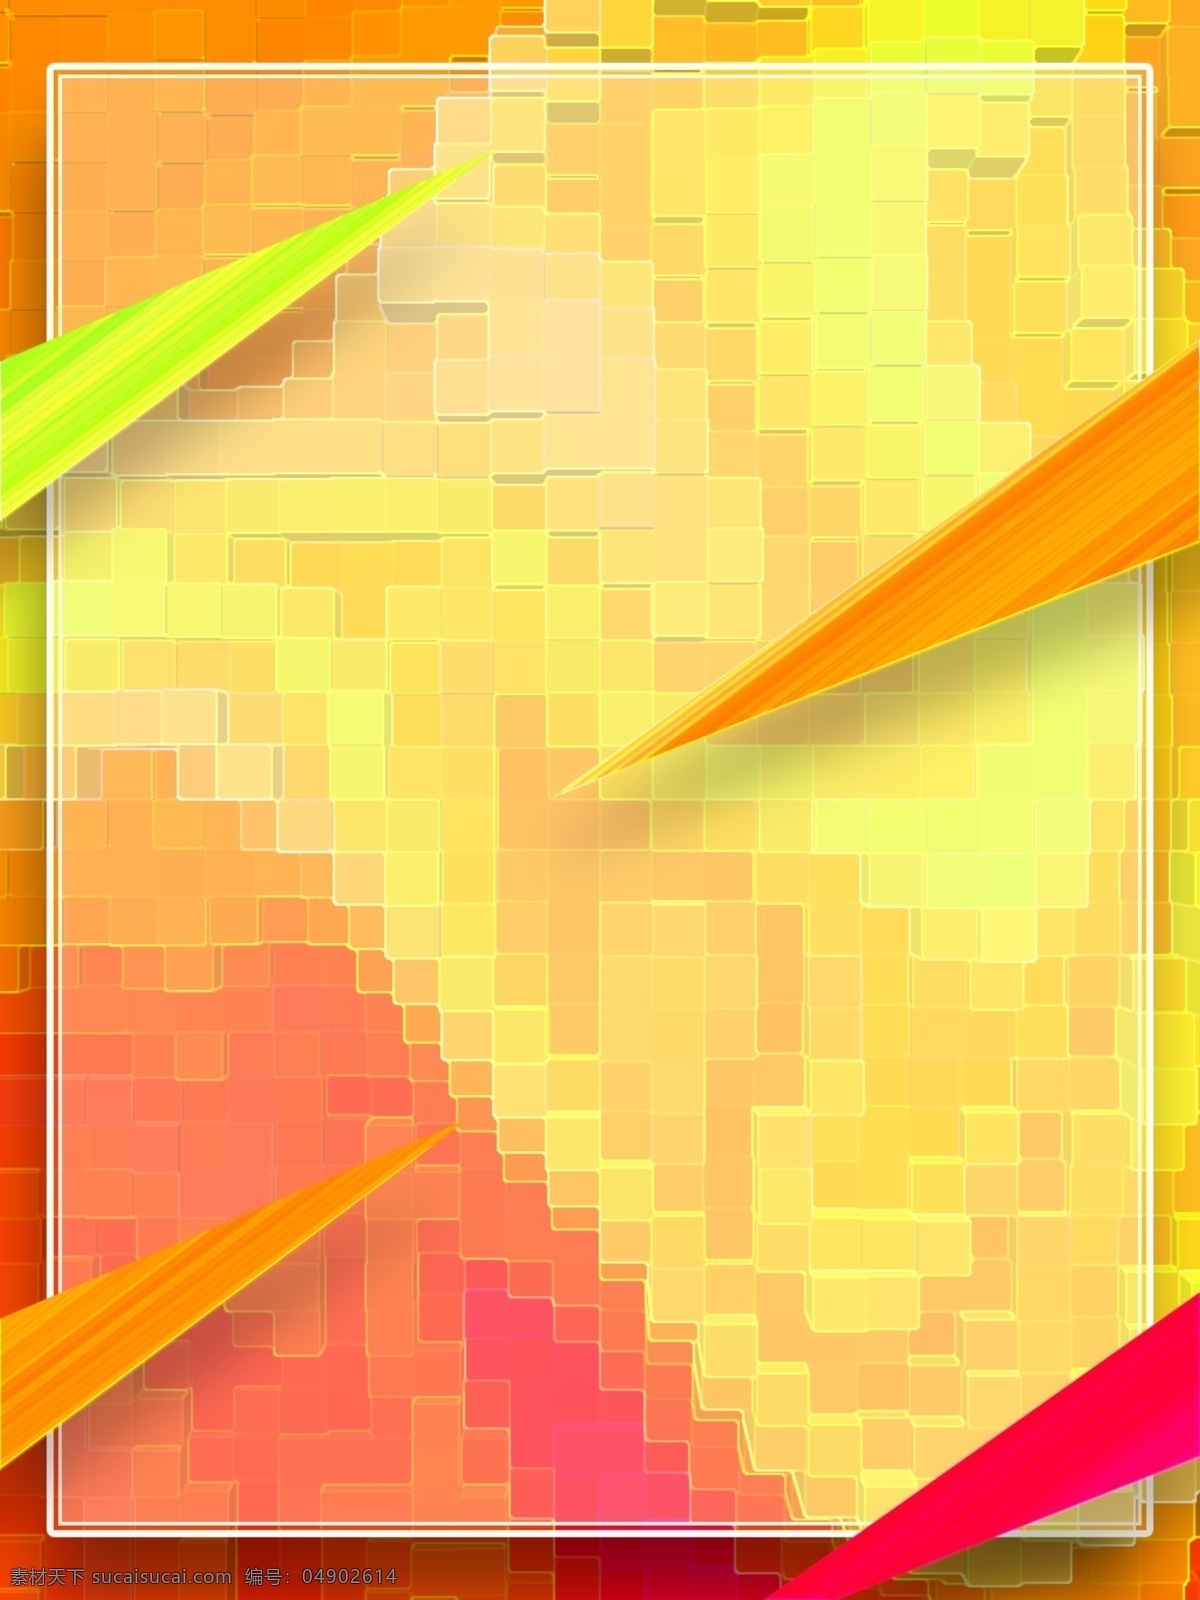 全 原创 几何 三角形 渐变 电商 方块 马赛克 背景 橙色 马赛克背景 粉色 正方体 竖版背景